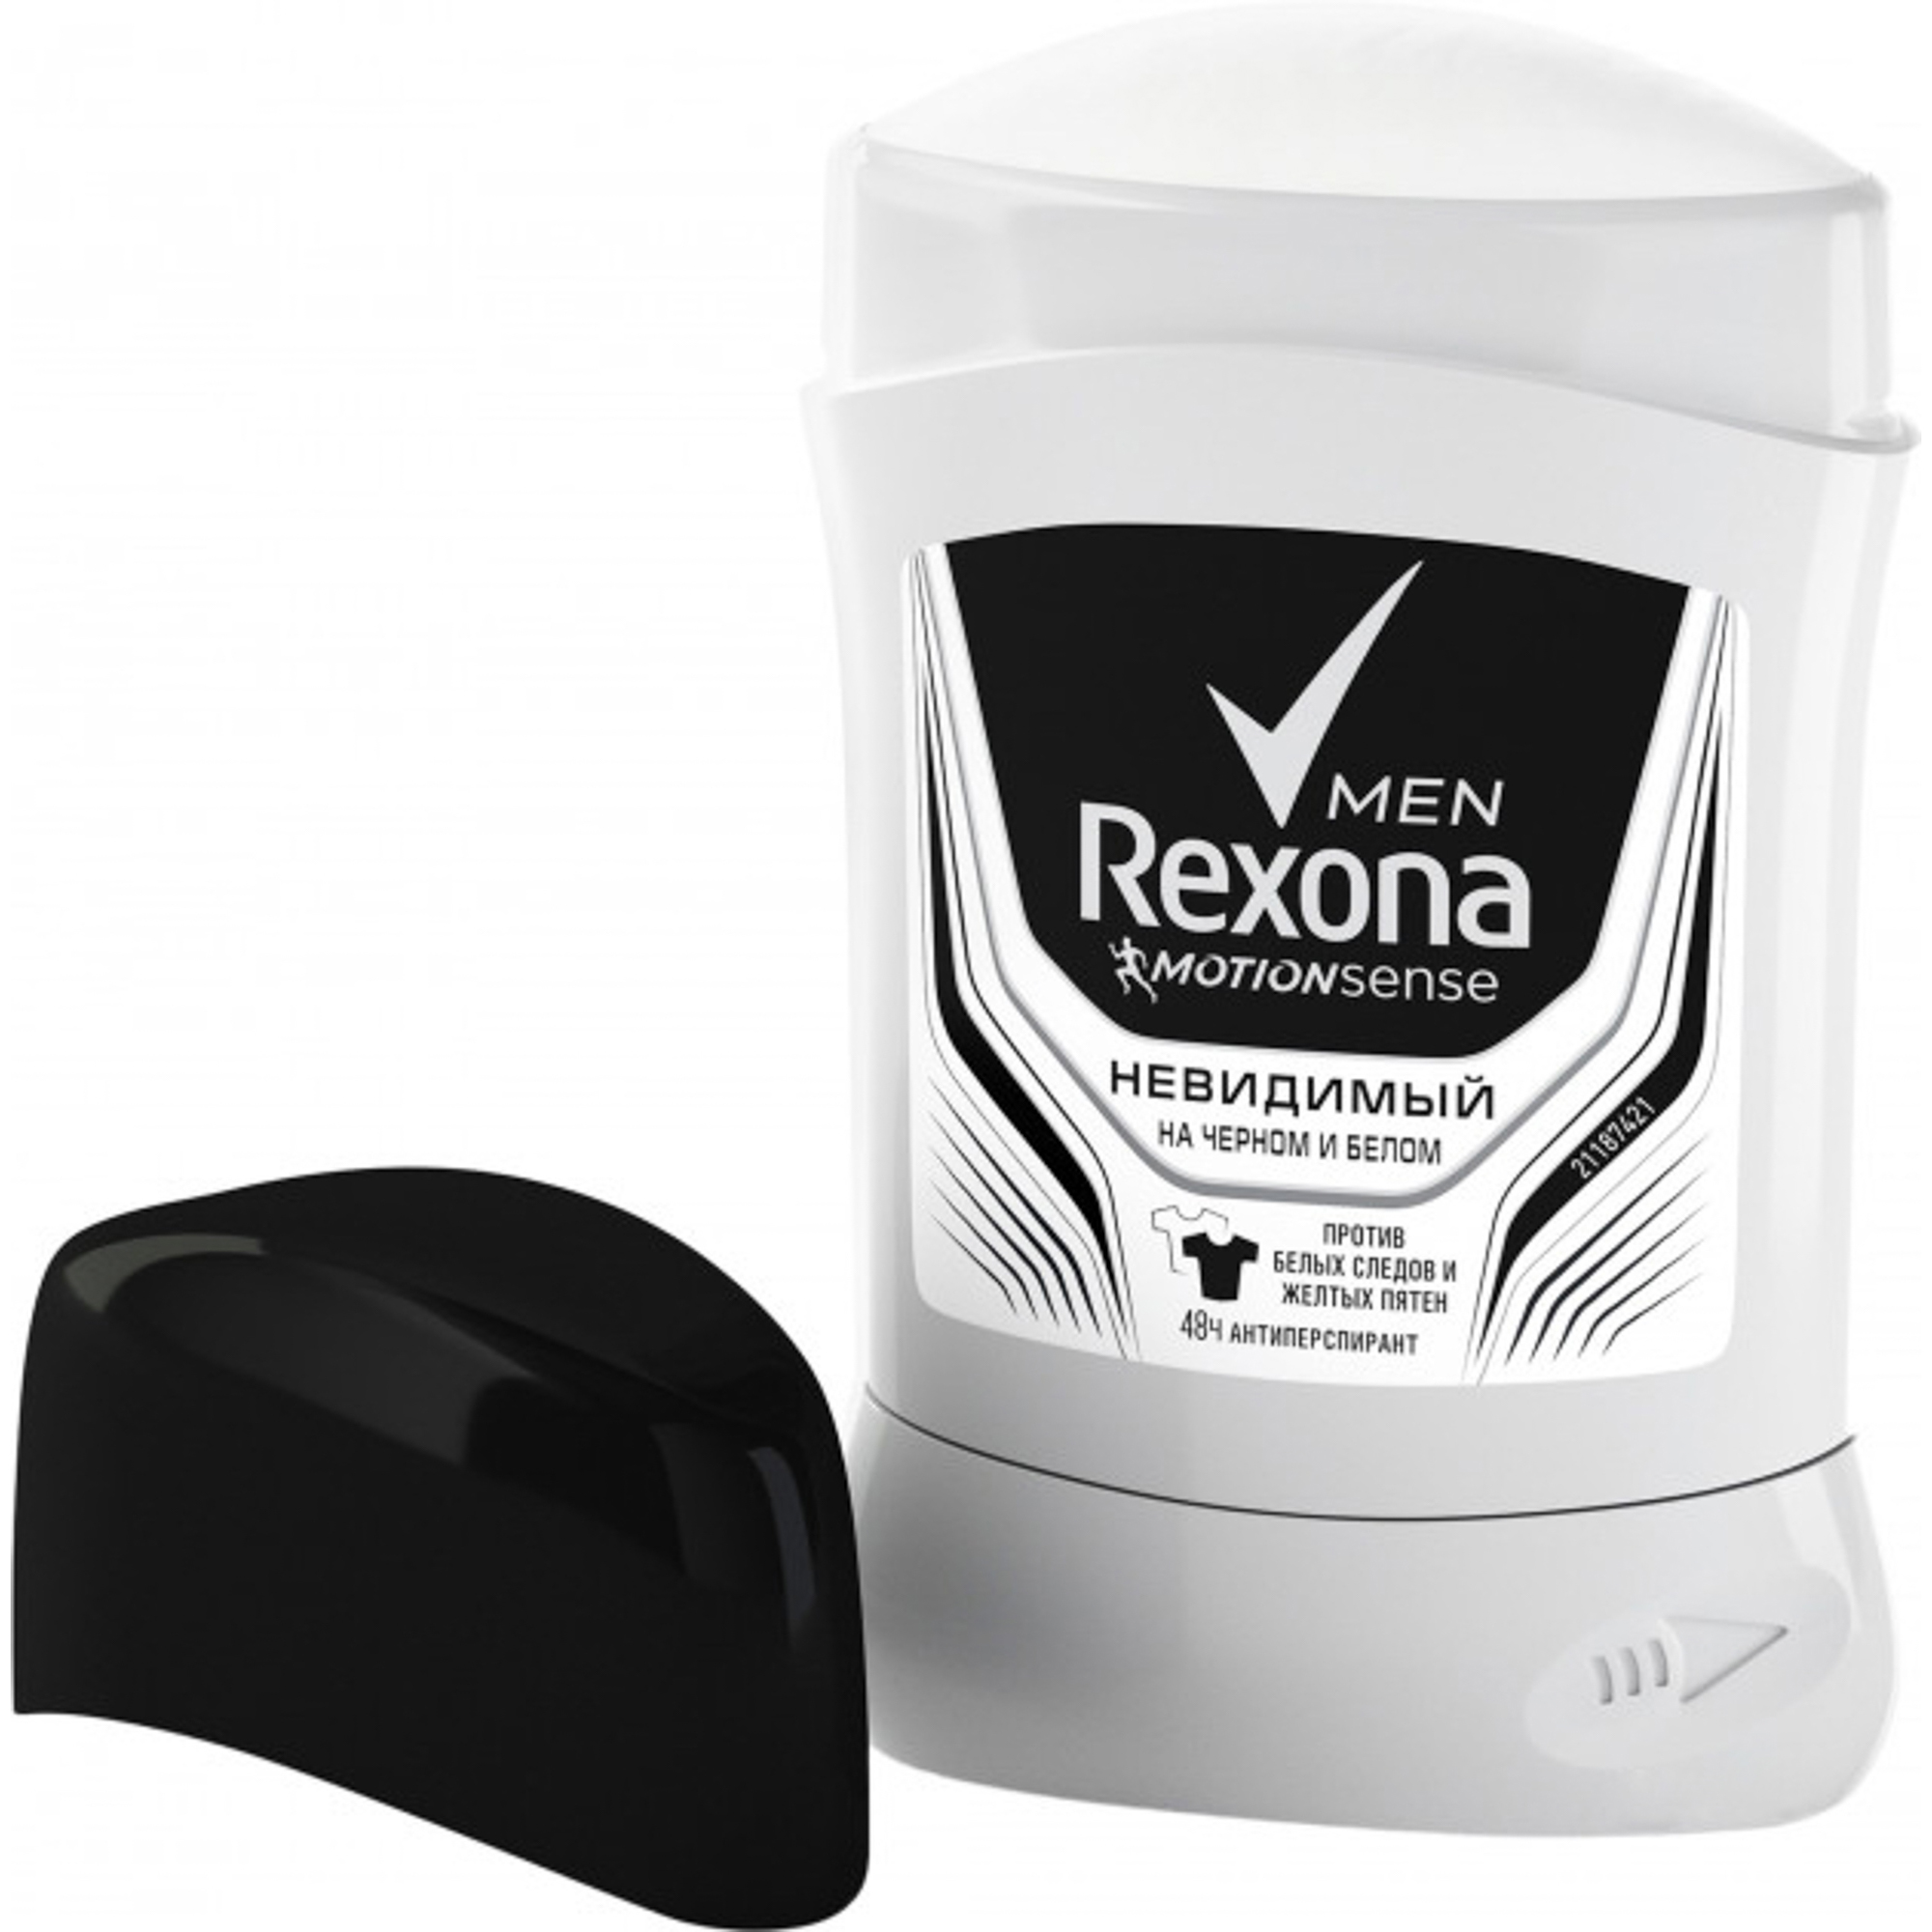 Антиперспирант-карандаш Rexona Men Невидимый на черной и белой одежде 50 мл, размер 12x8x3 см 21145691 - фото 3